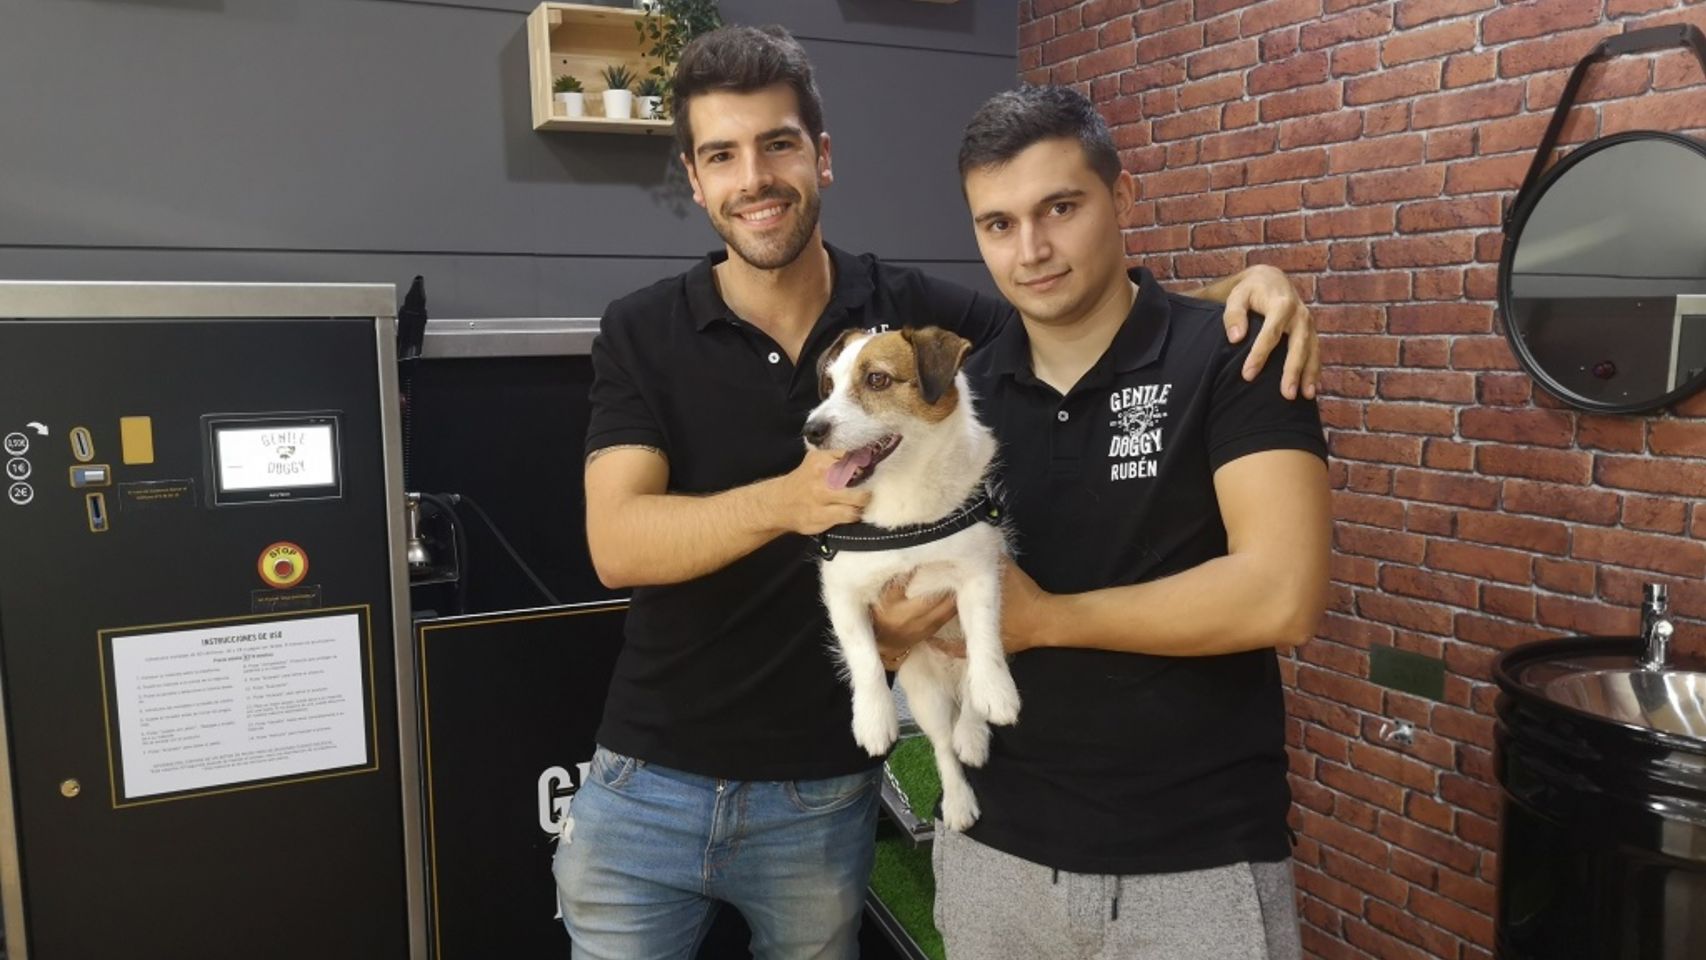 Jose Manuel Martínez Taboada y Rubén Villar Freiria, socios fundadores de Gentle Doggy.